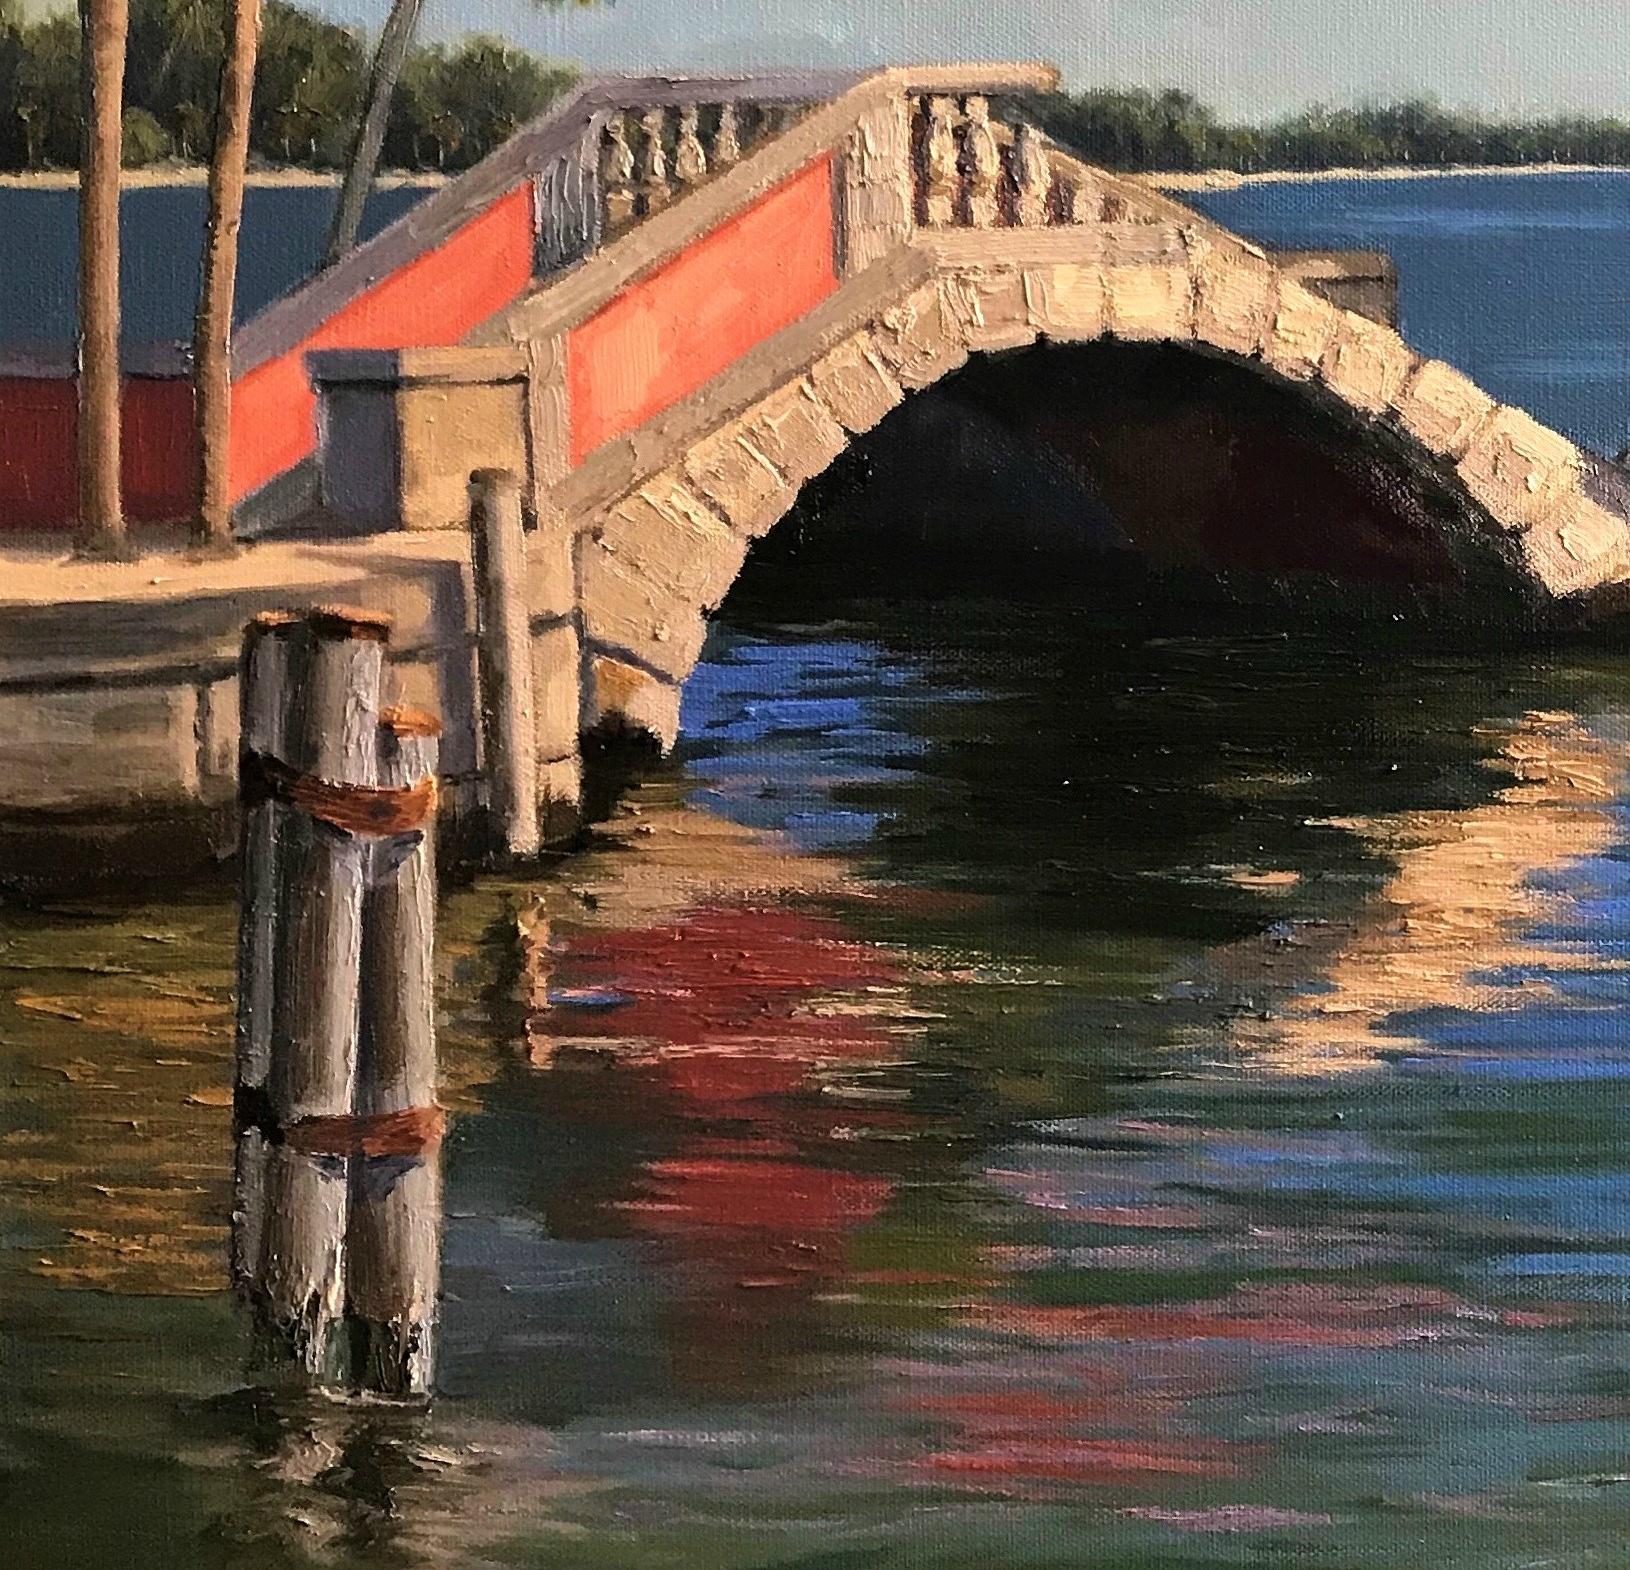 Andres Lopez Landscape Painting – Gemälde der Alten Brücke, Wasser- und Landschaftsbilder, Schönheit der Natur, amerikanischer Traum